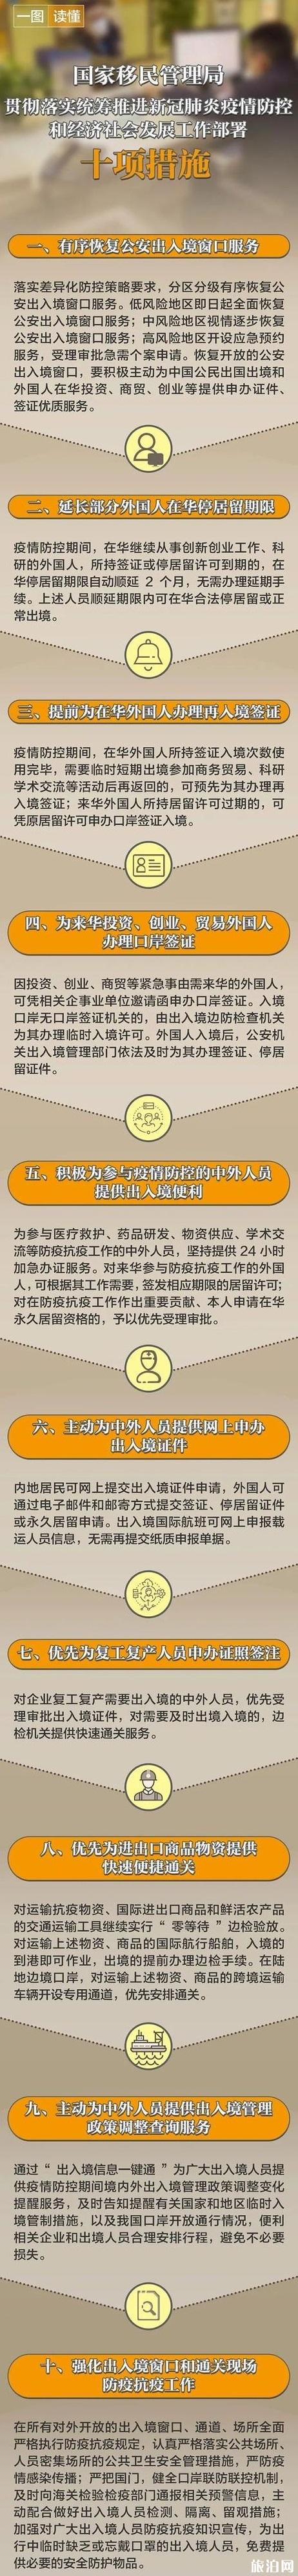 南京对入境人员防控措施介绍